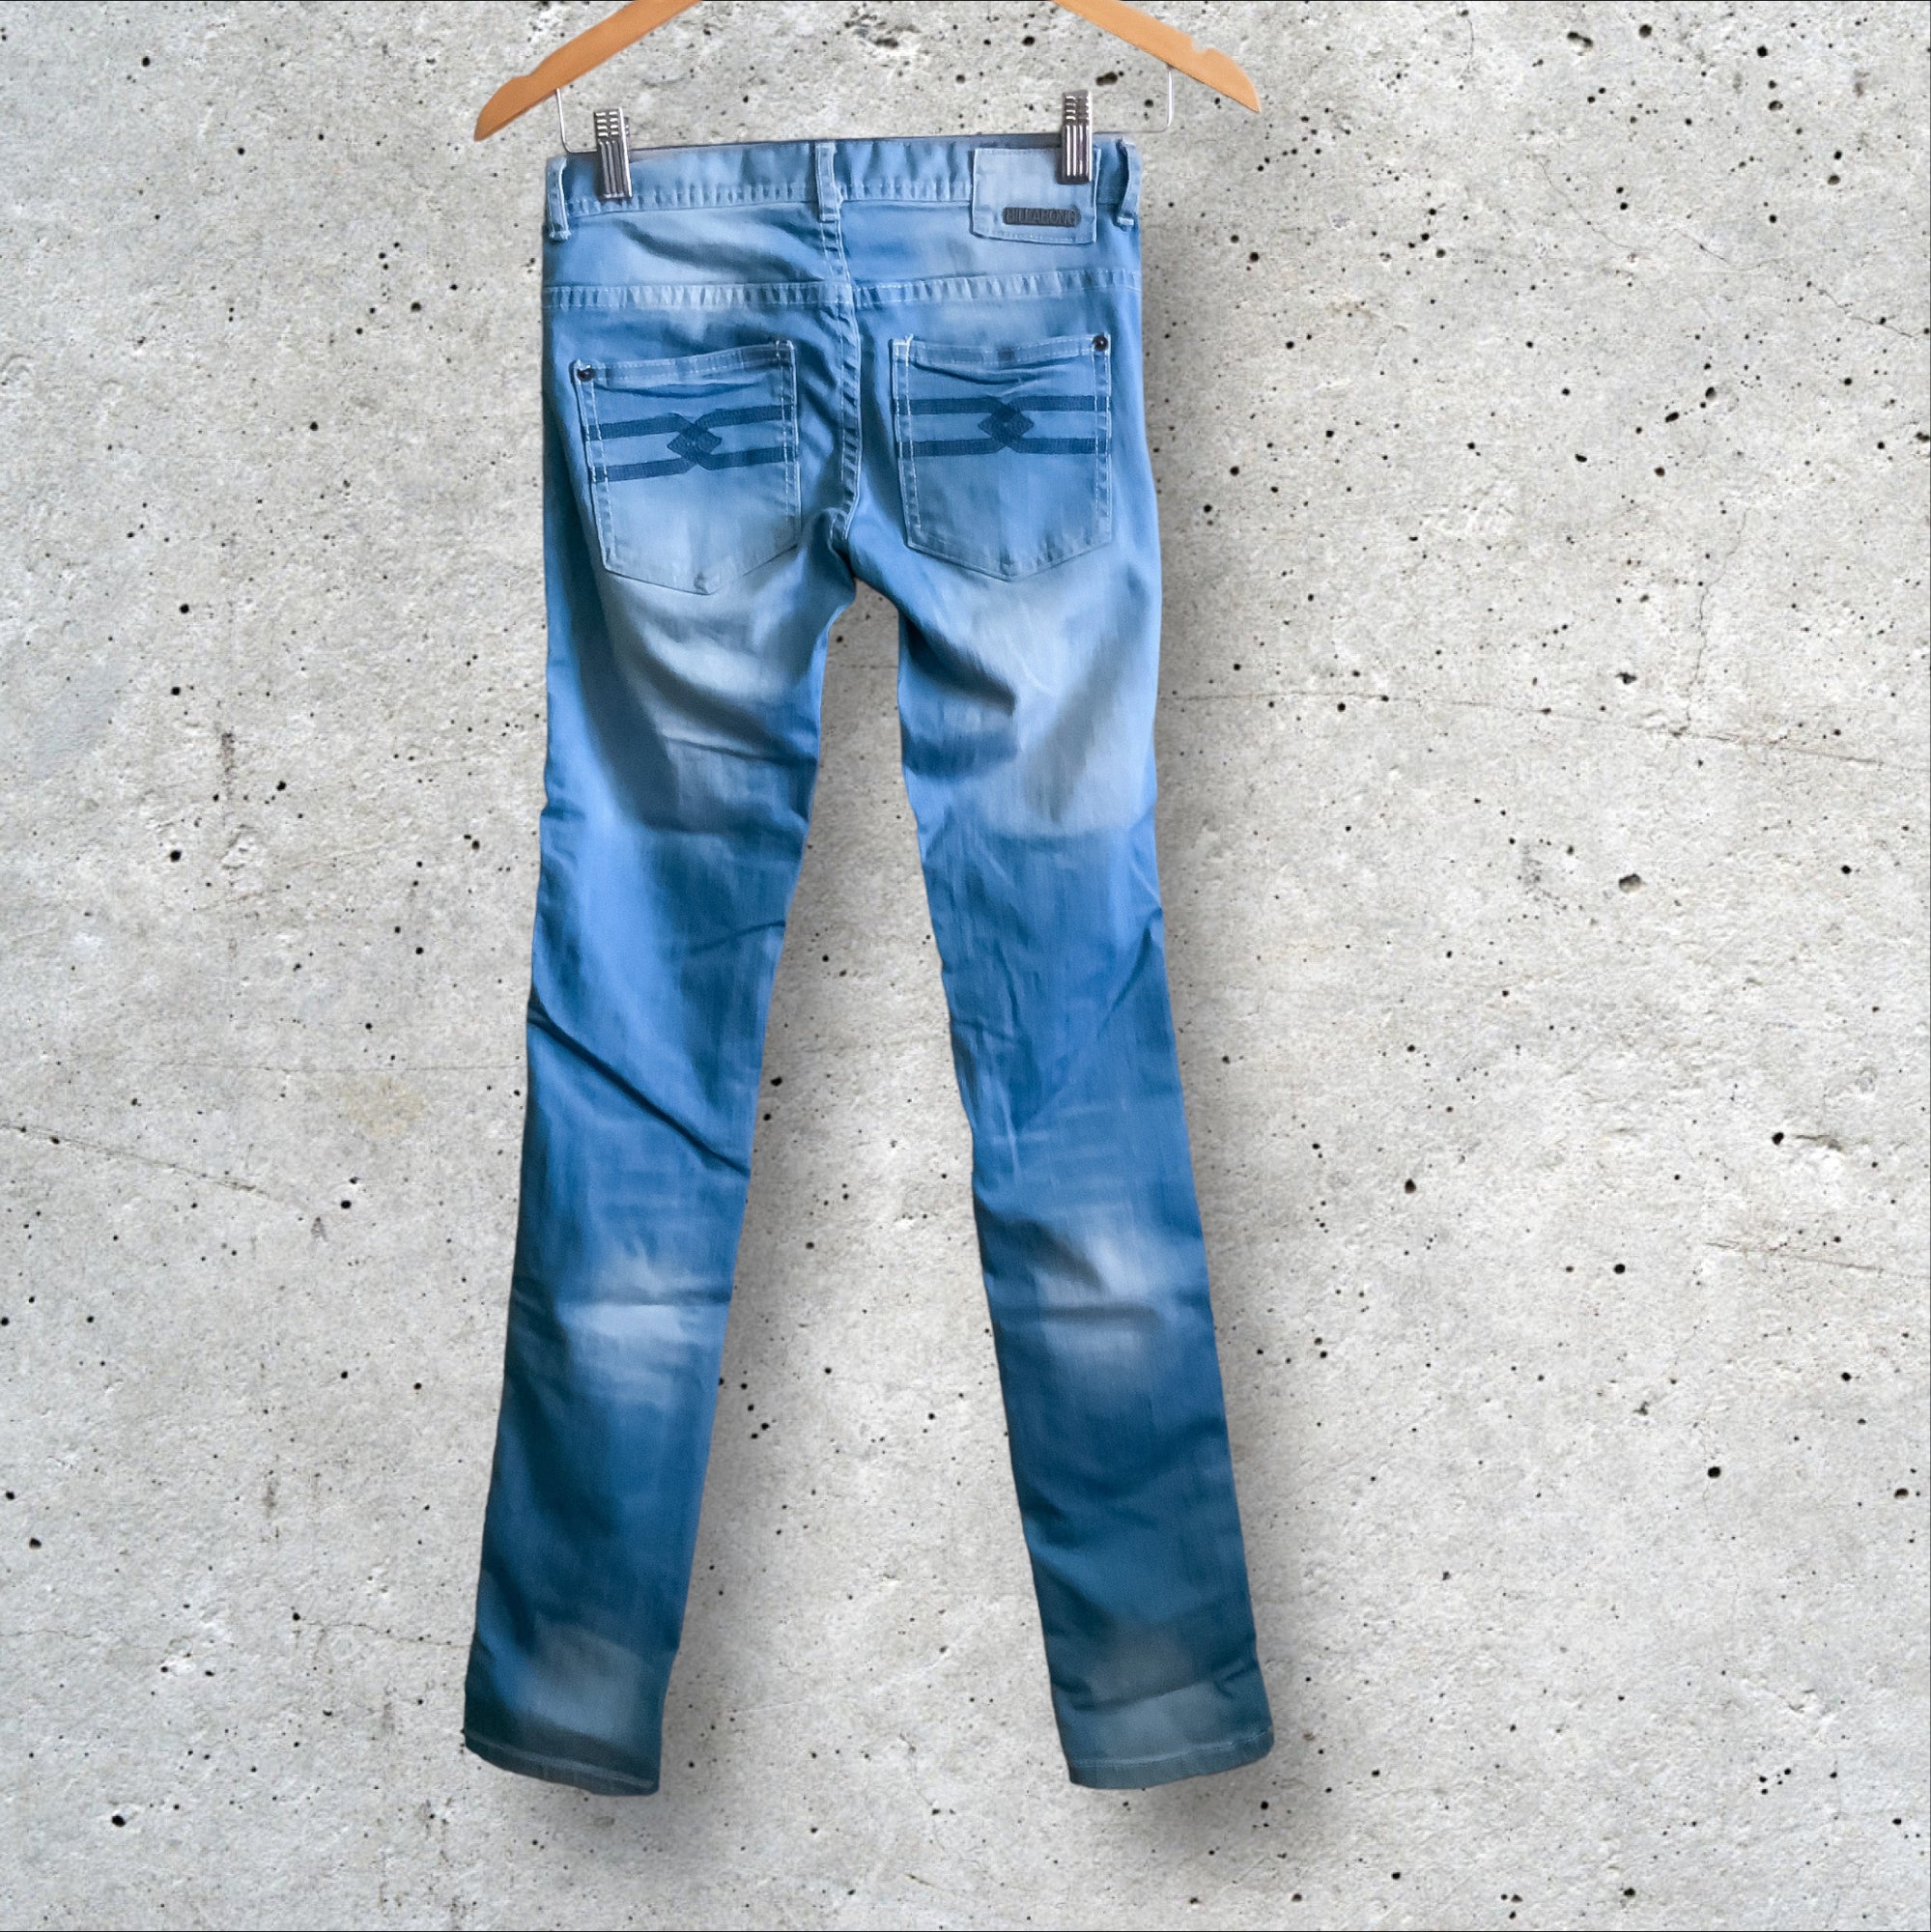 BILLABONG Supaslim Pixie Light Blue Washed skinny Jeans - Size 6